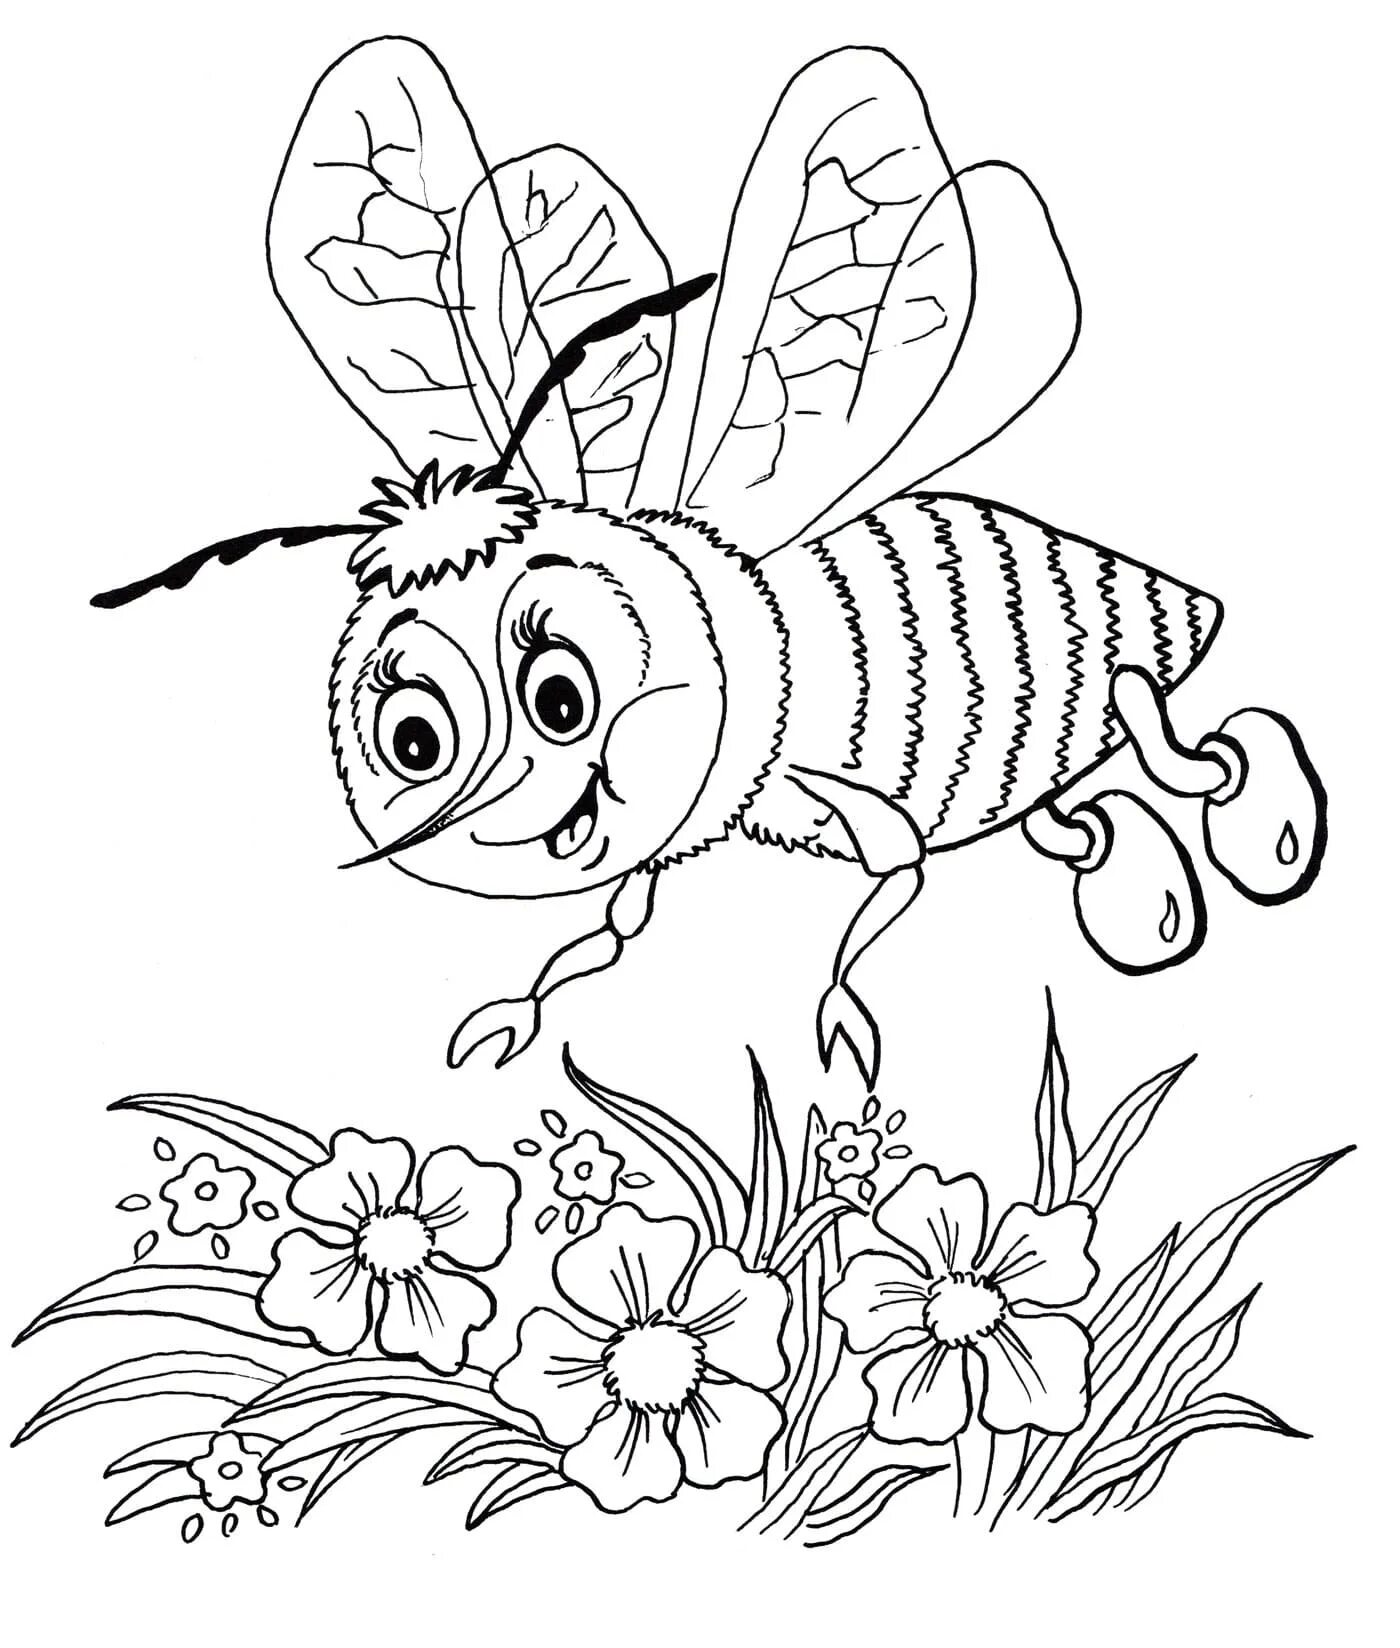 Пчела раскраска. Насекомые раскраска для детей. Пчела раскраска для детей. Раскраска насекомые для малышей. Раскраска пчела для детей